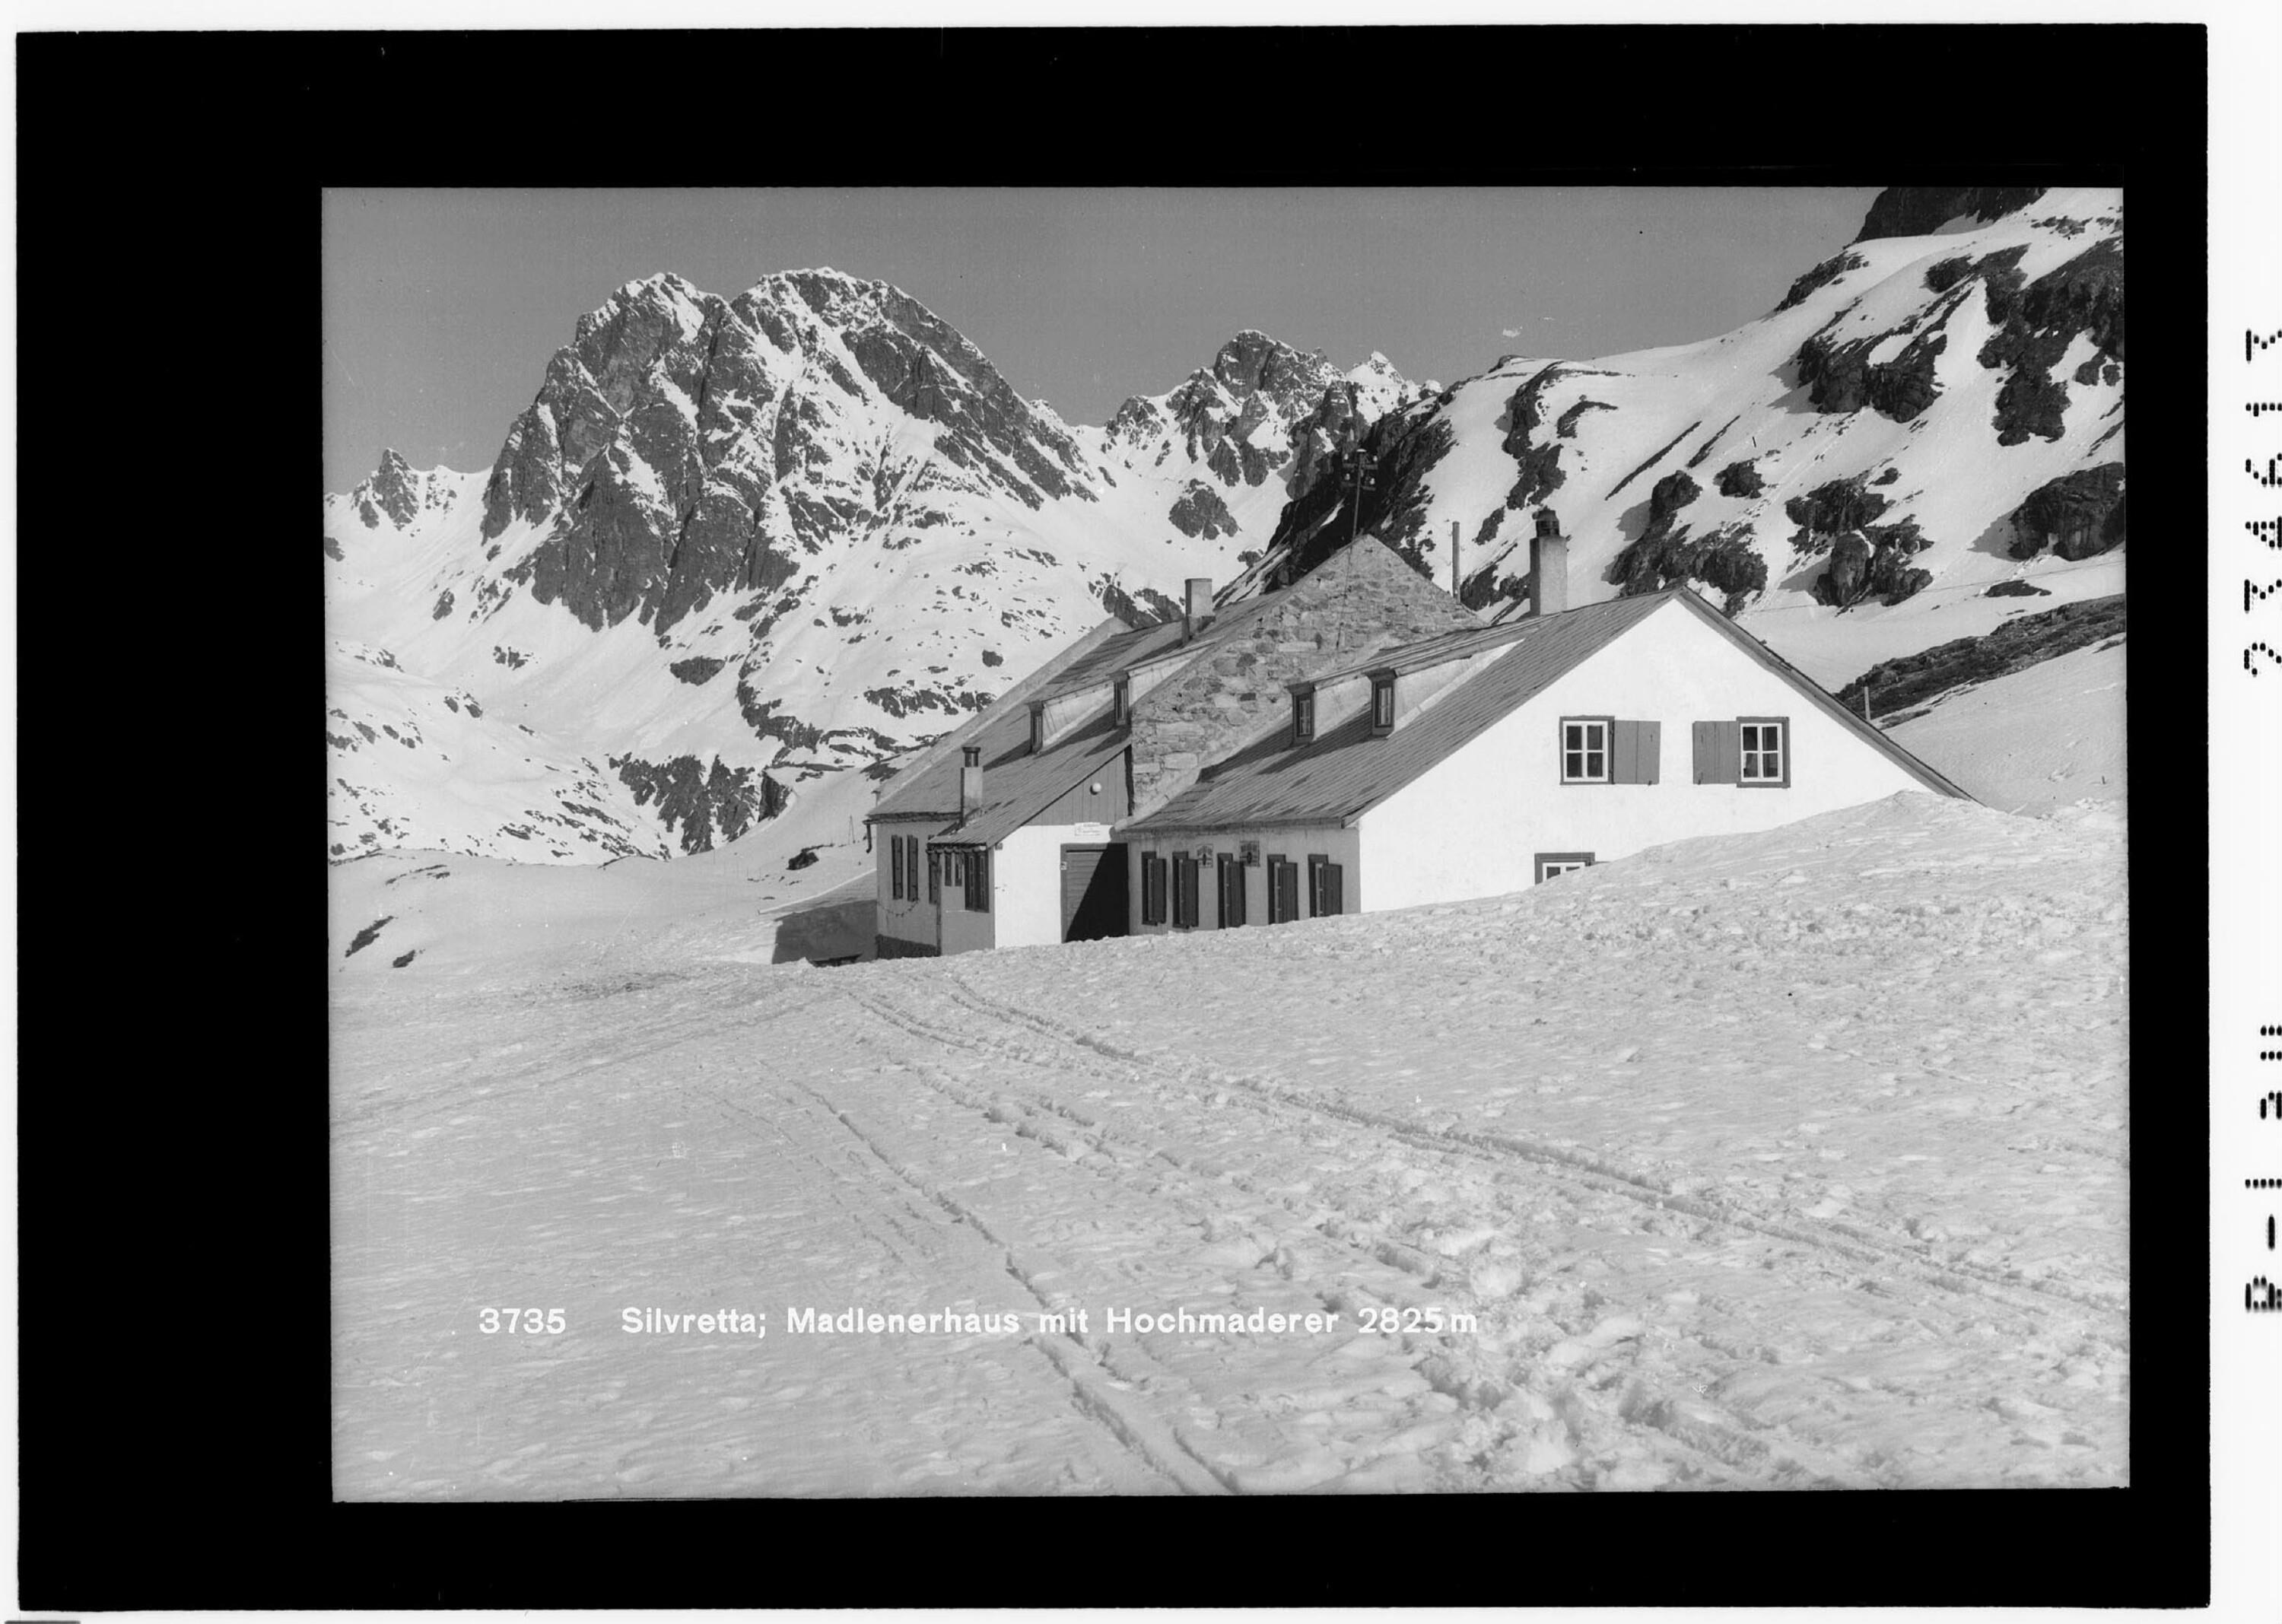 Silvretta / Madlenerhaus mit Hochmaderer 2825 m></div>


    <hr>
    <div class=